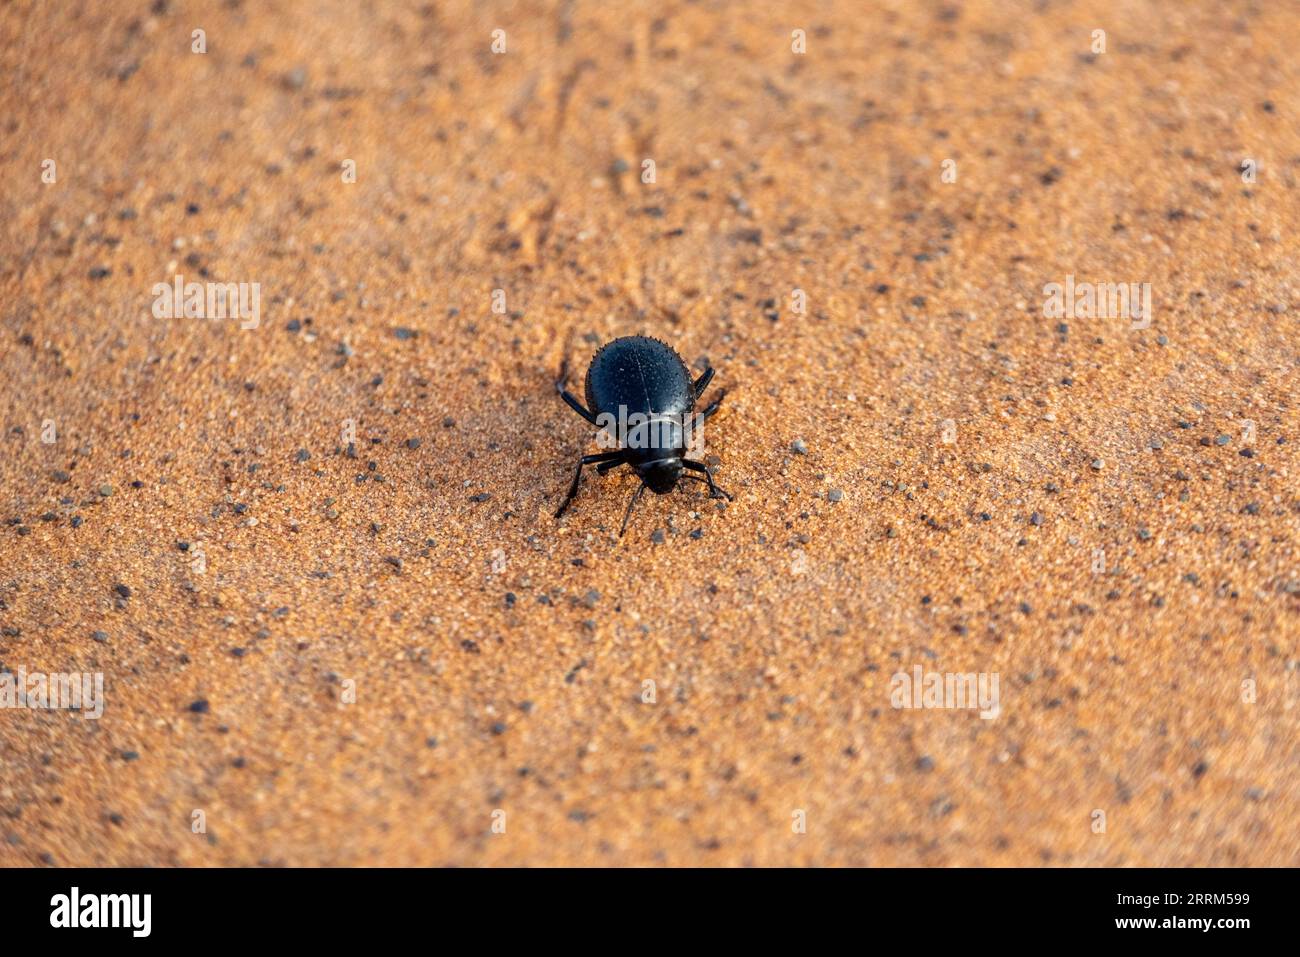 Un scarabée noir dans le désert d'Erg Chebbi au Maroc Banque D'Images